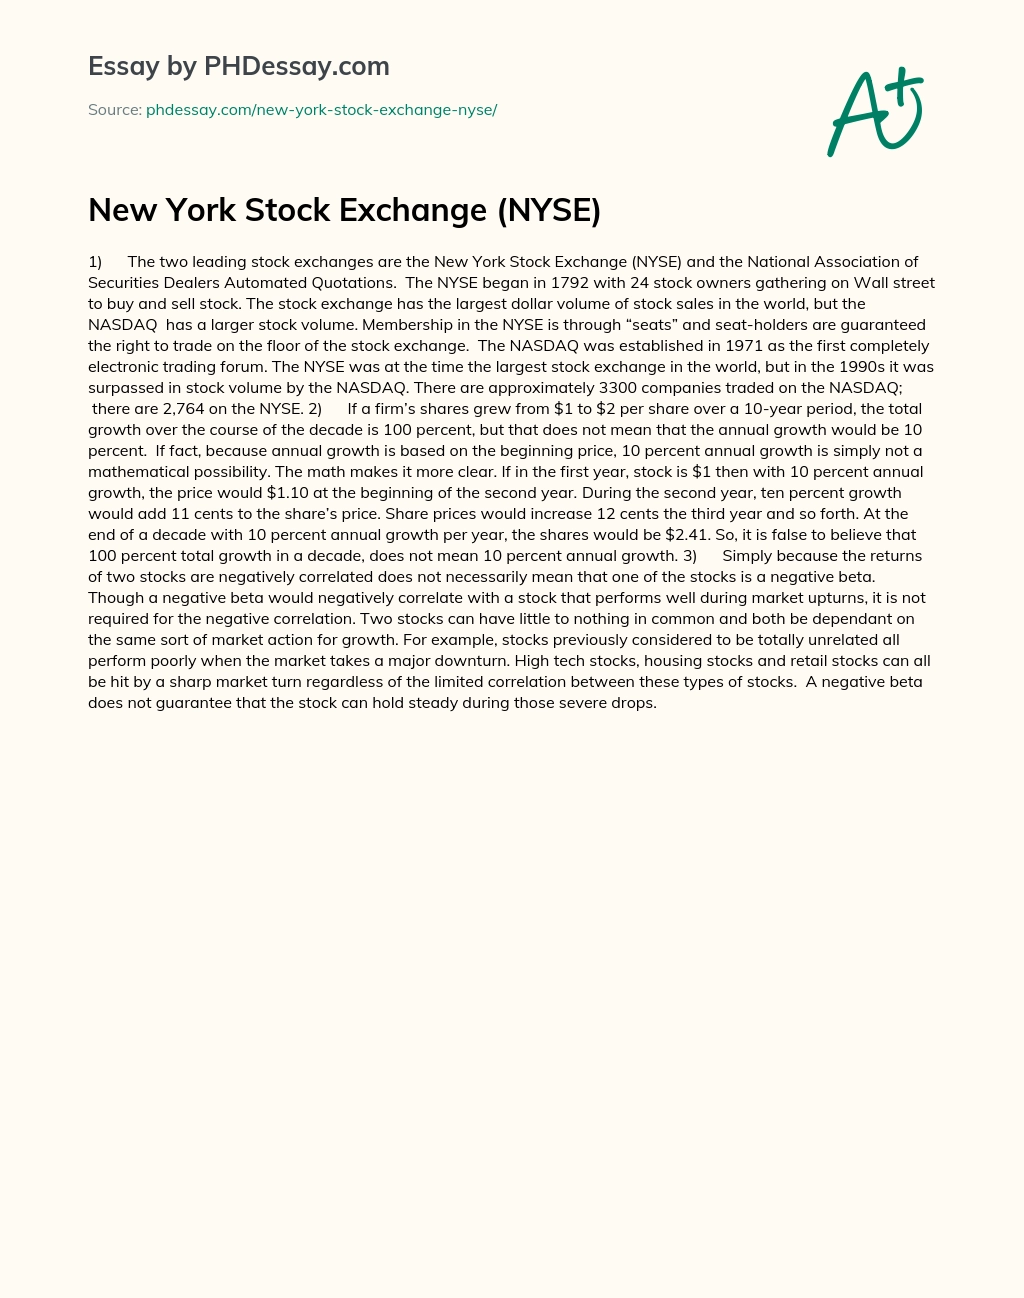 New York Stock Exchange (NYSE) essay